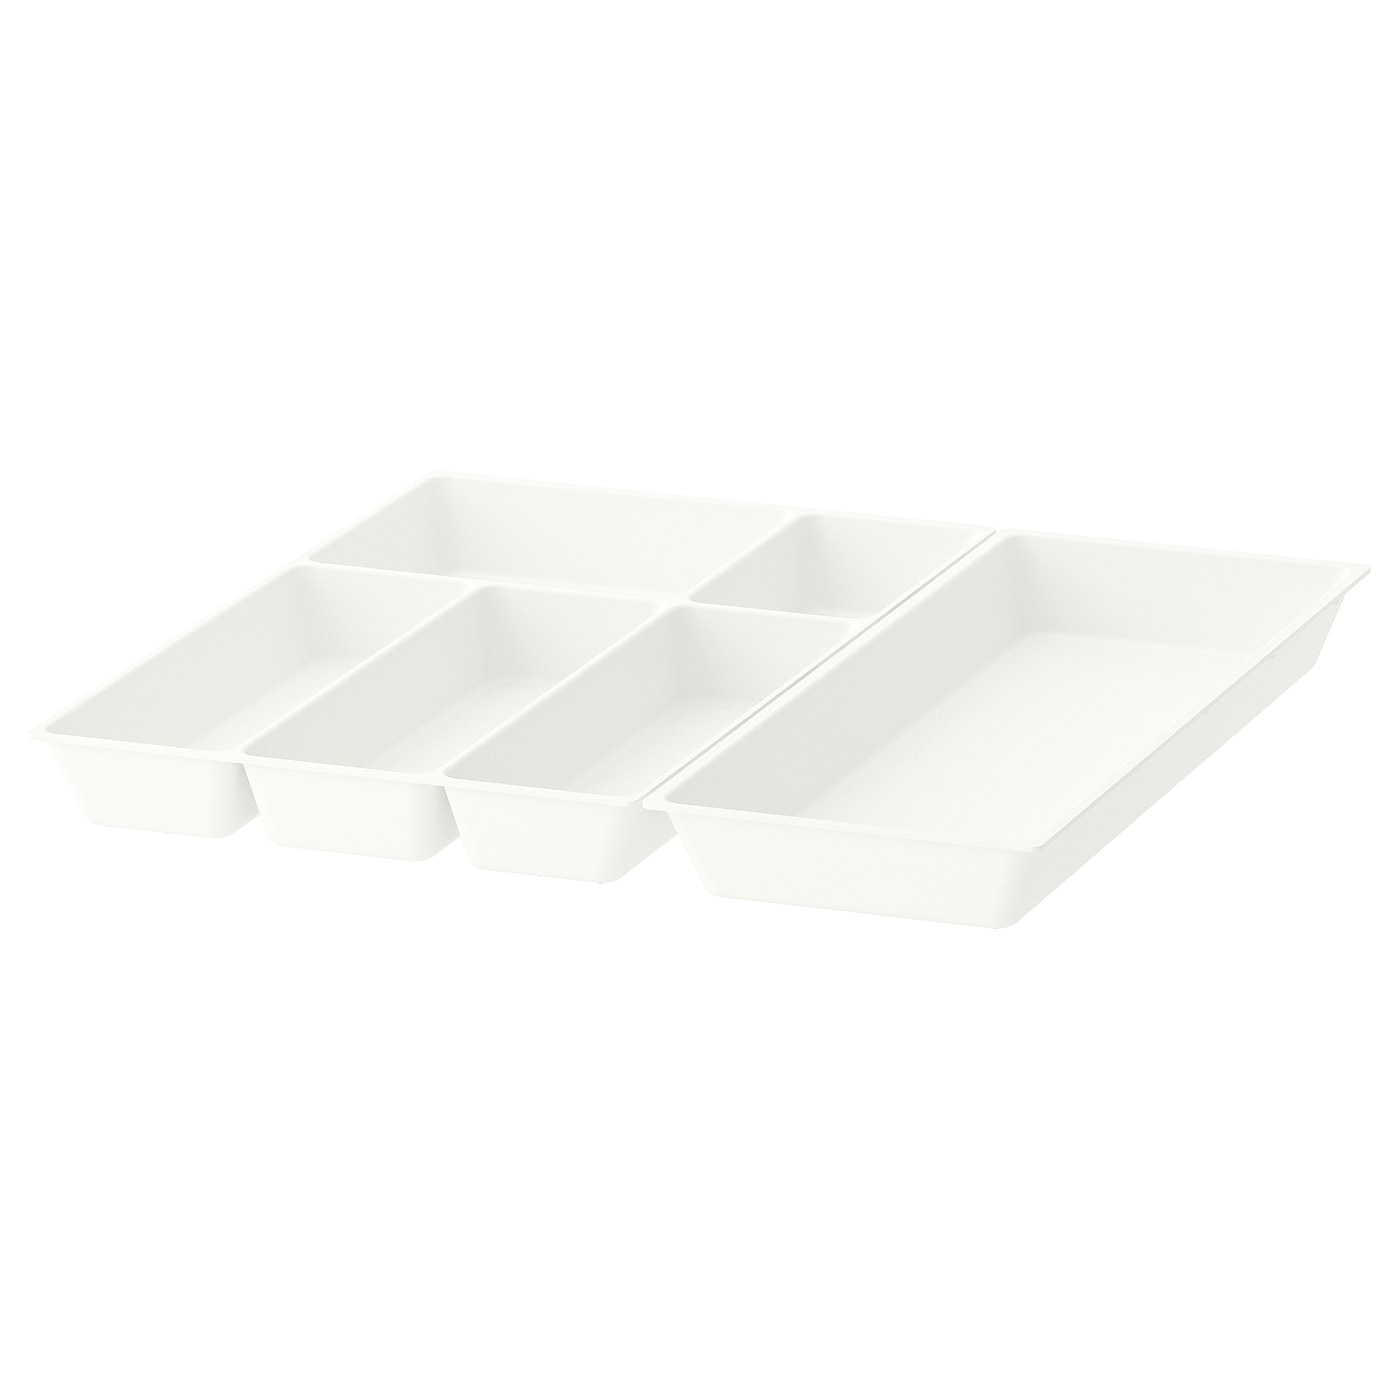 Лоток для столовых приборов - IKEA UPPDATERA, 52х50 см, белый, УППДАТЕРА ИКЕА